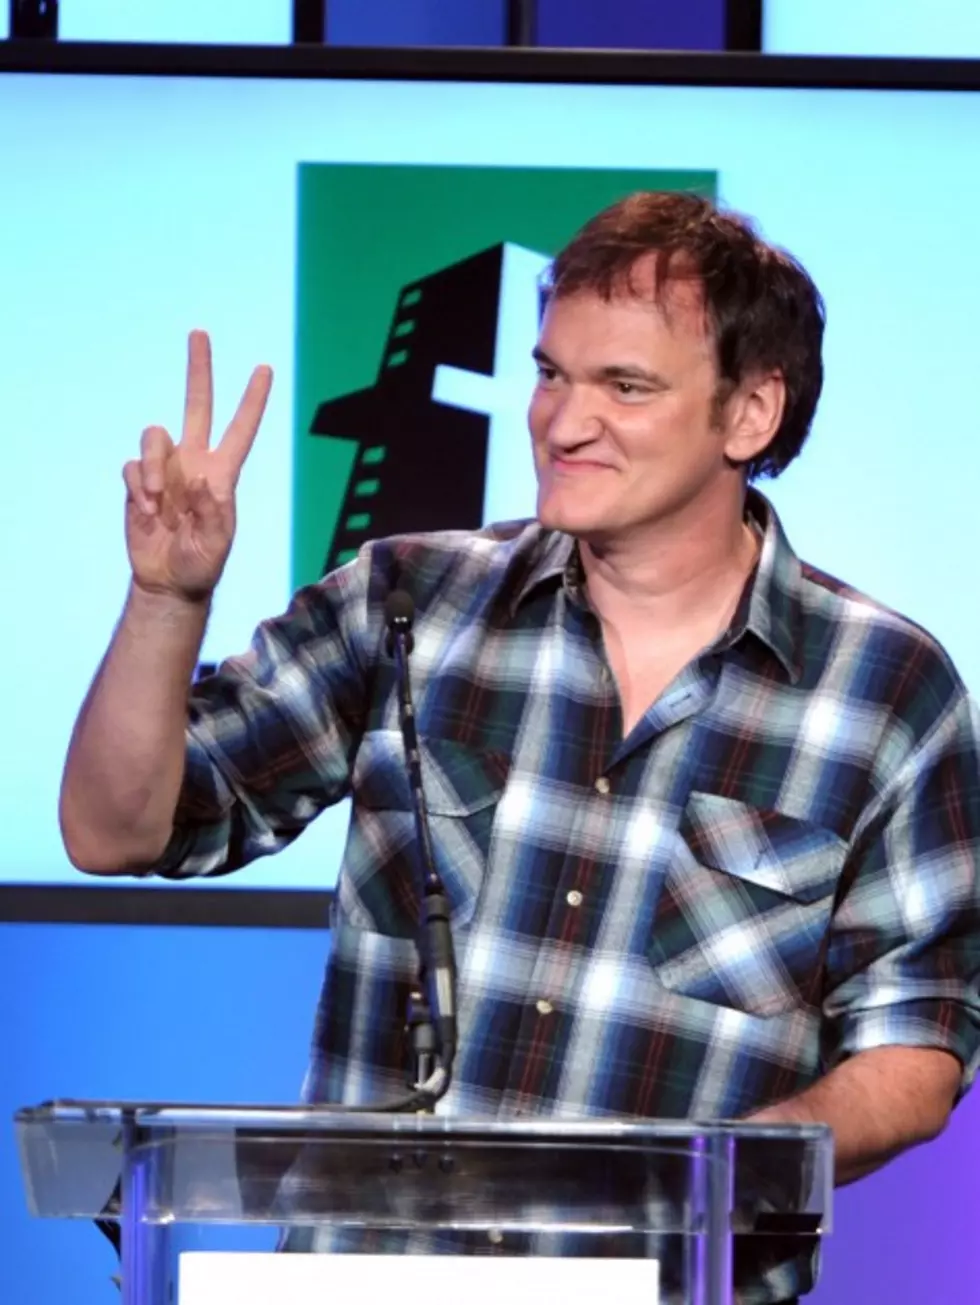 Tarantino To Film Part Of Next Movie In Wyoming